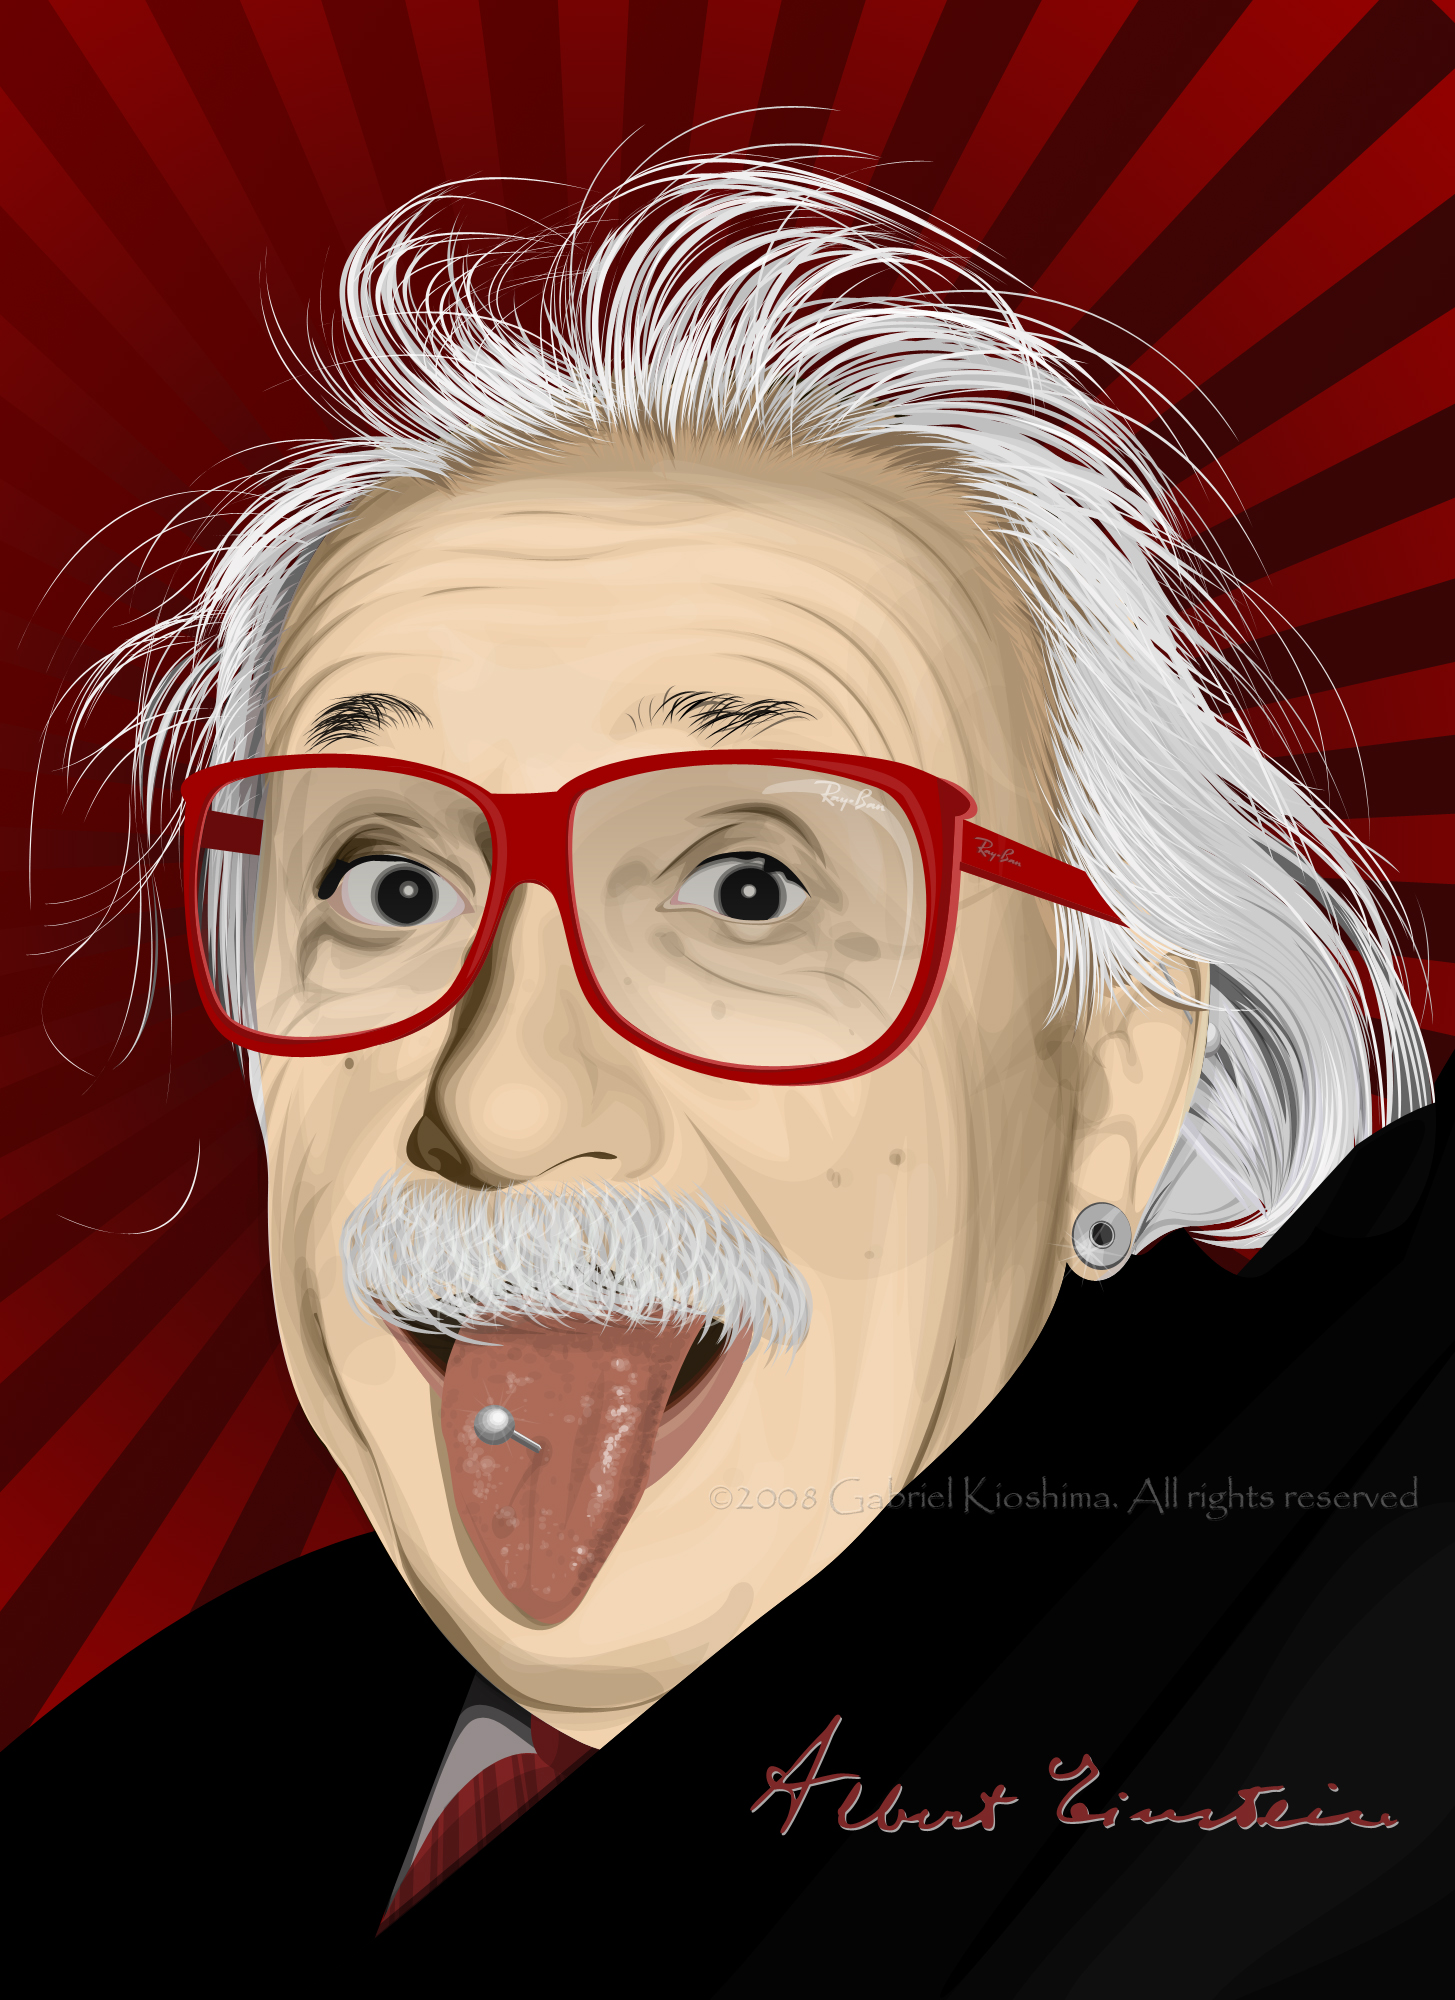 Stylish_Einstein_by_kioshima.jpg